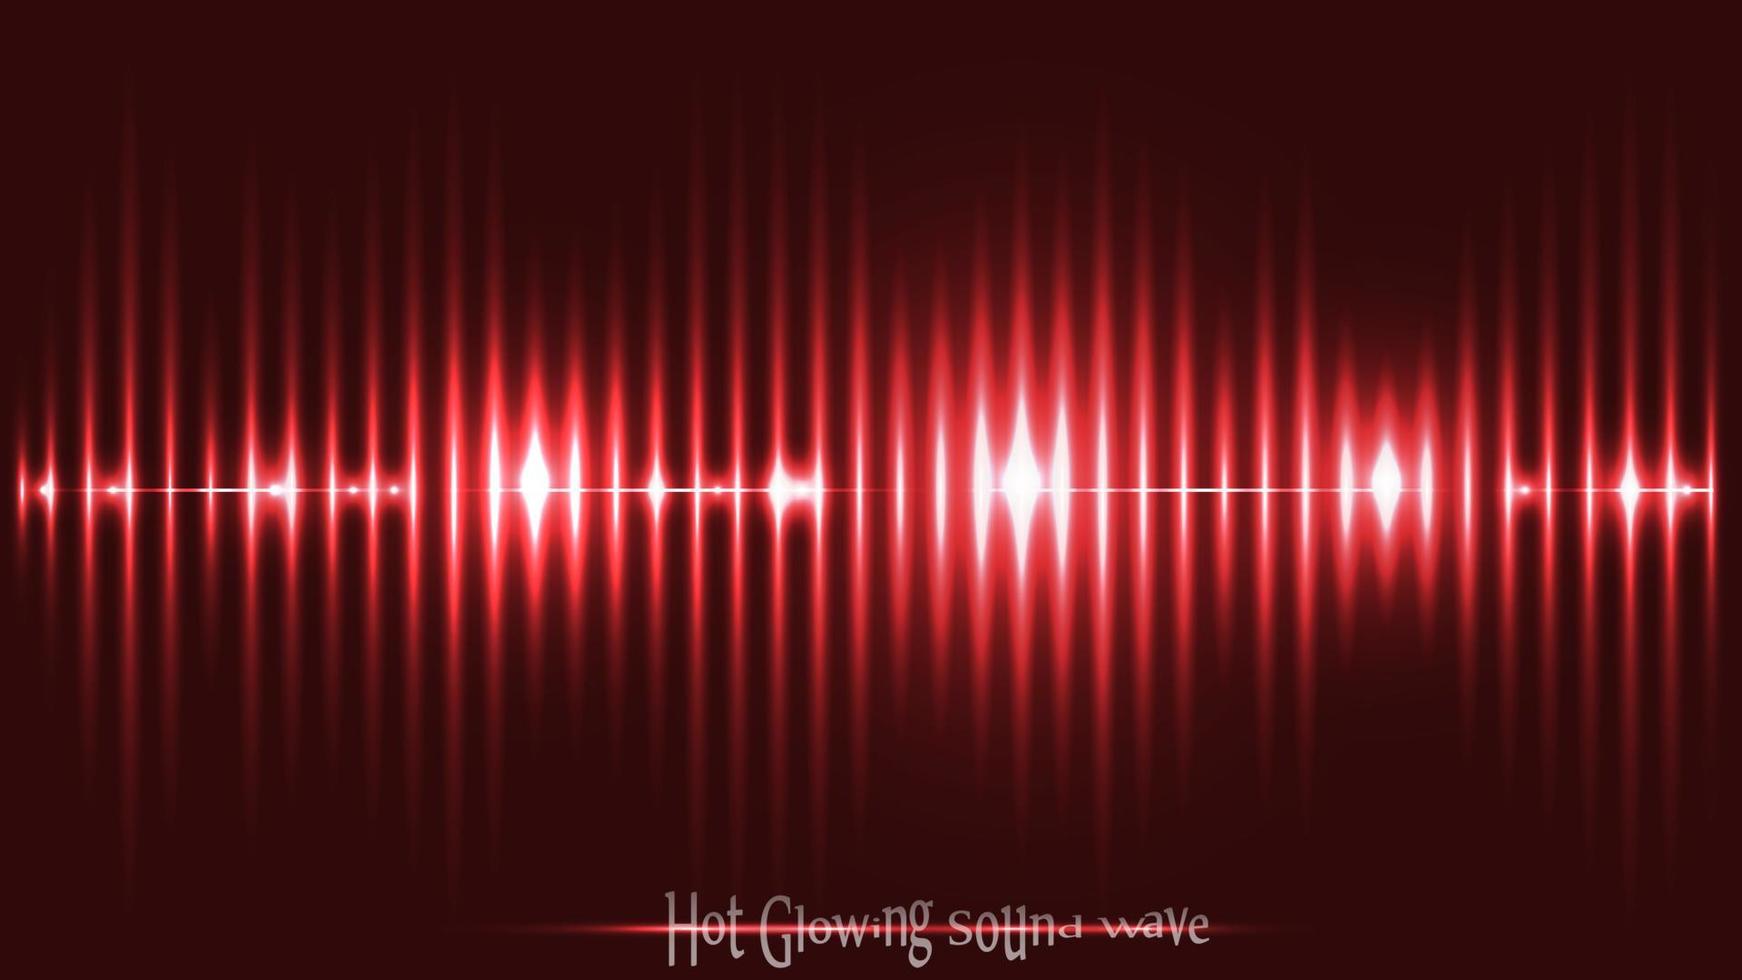 onda sonora vermelha brilhante com linhas de frequência pontilhadas e estilo de efeitos de néon. papel de parede de composição de linhas latentes. vetor